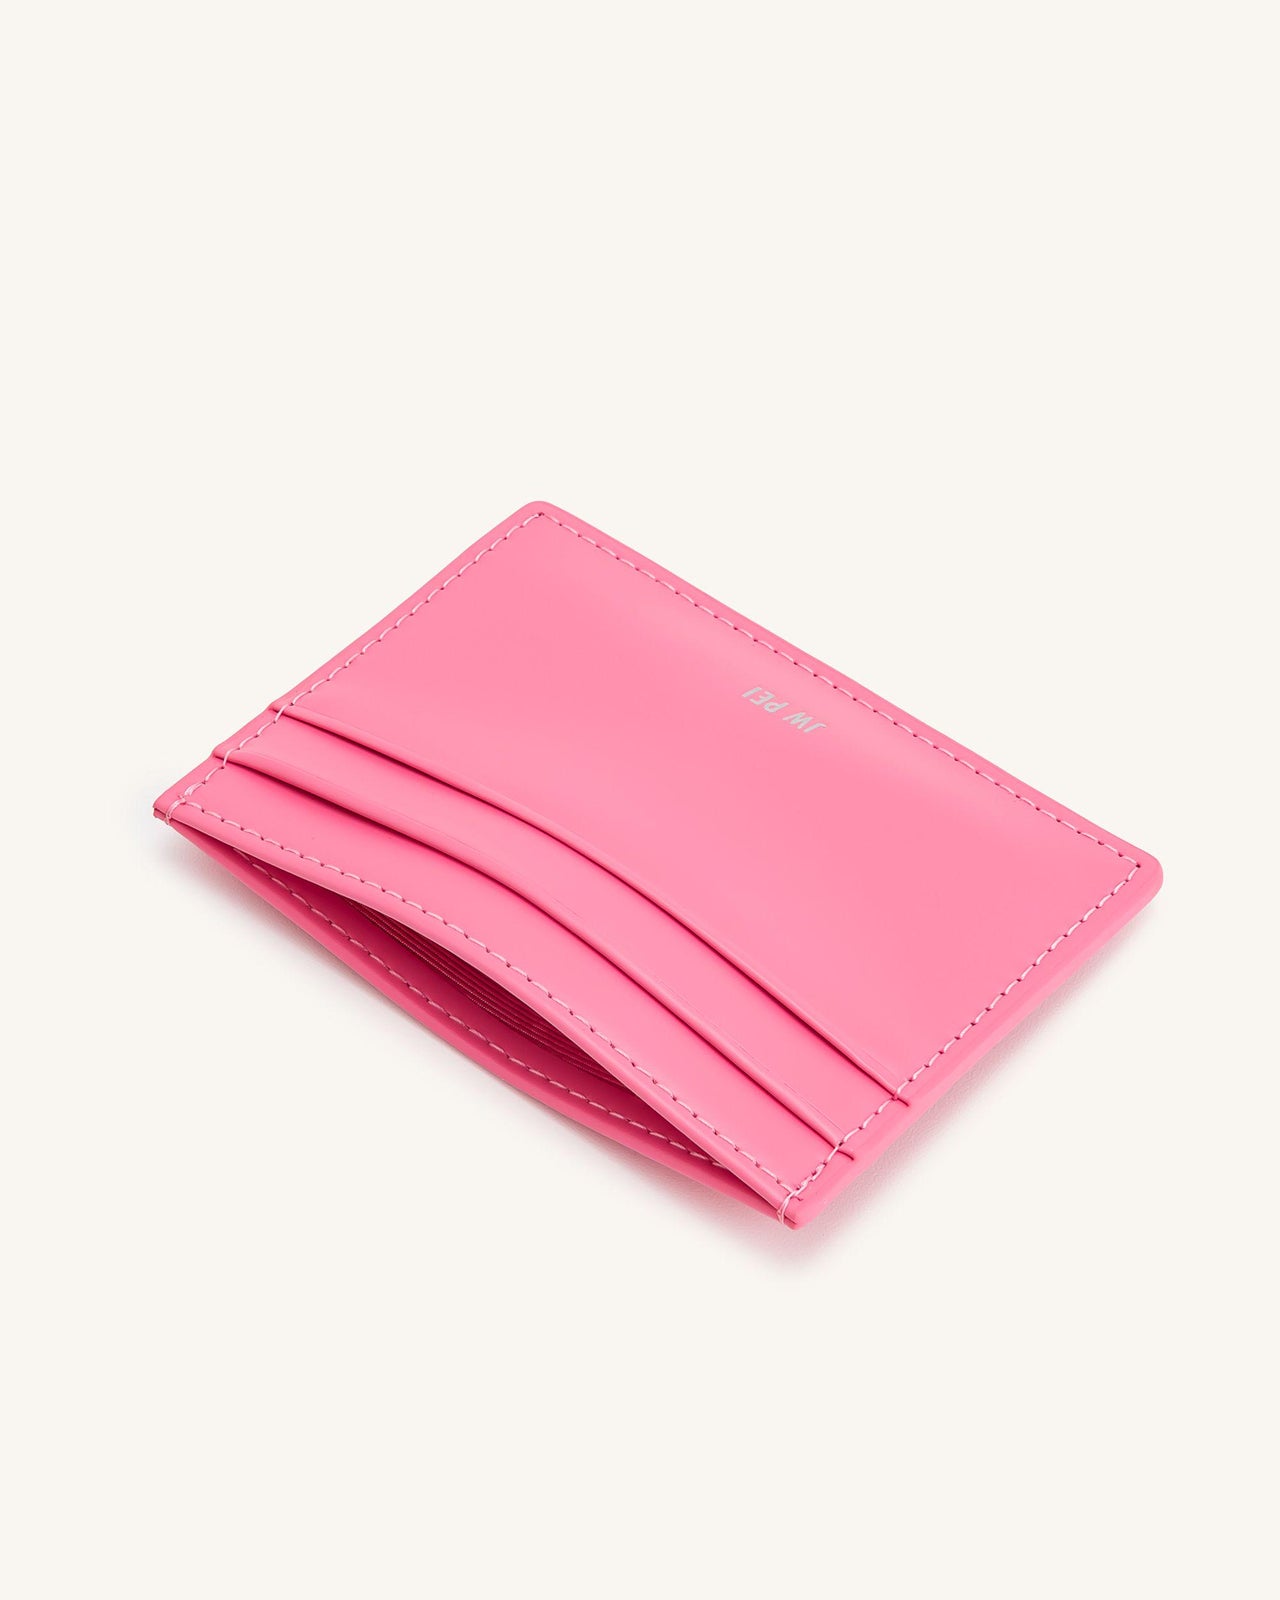 カードホルダー - ピンク